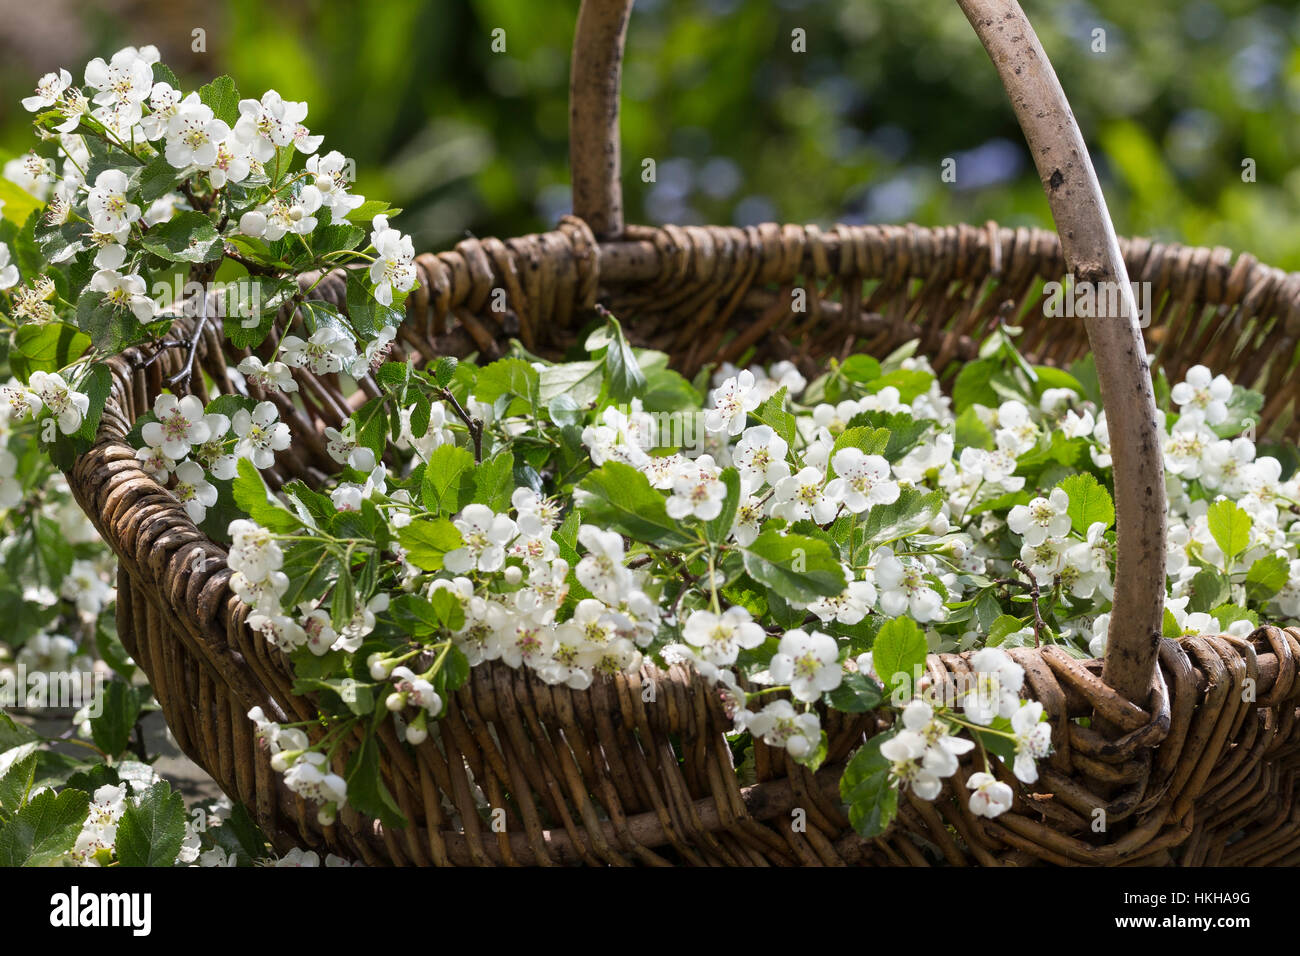 Weißdornblüten, Weißdorn-Blüten, Ernte, einem Korb, Weißdorn, Weissdorn, Weiß-Dorn, Weiss-Dorn, Crataegus spec., l'anglais, l'Aubépine Banque D'Images